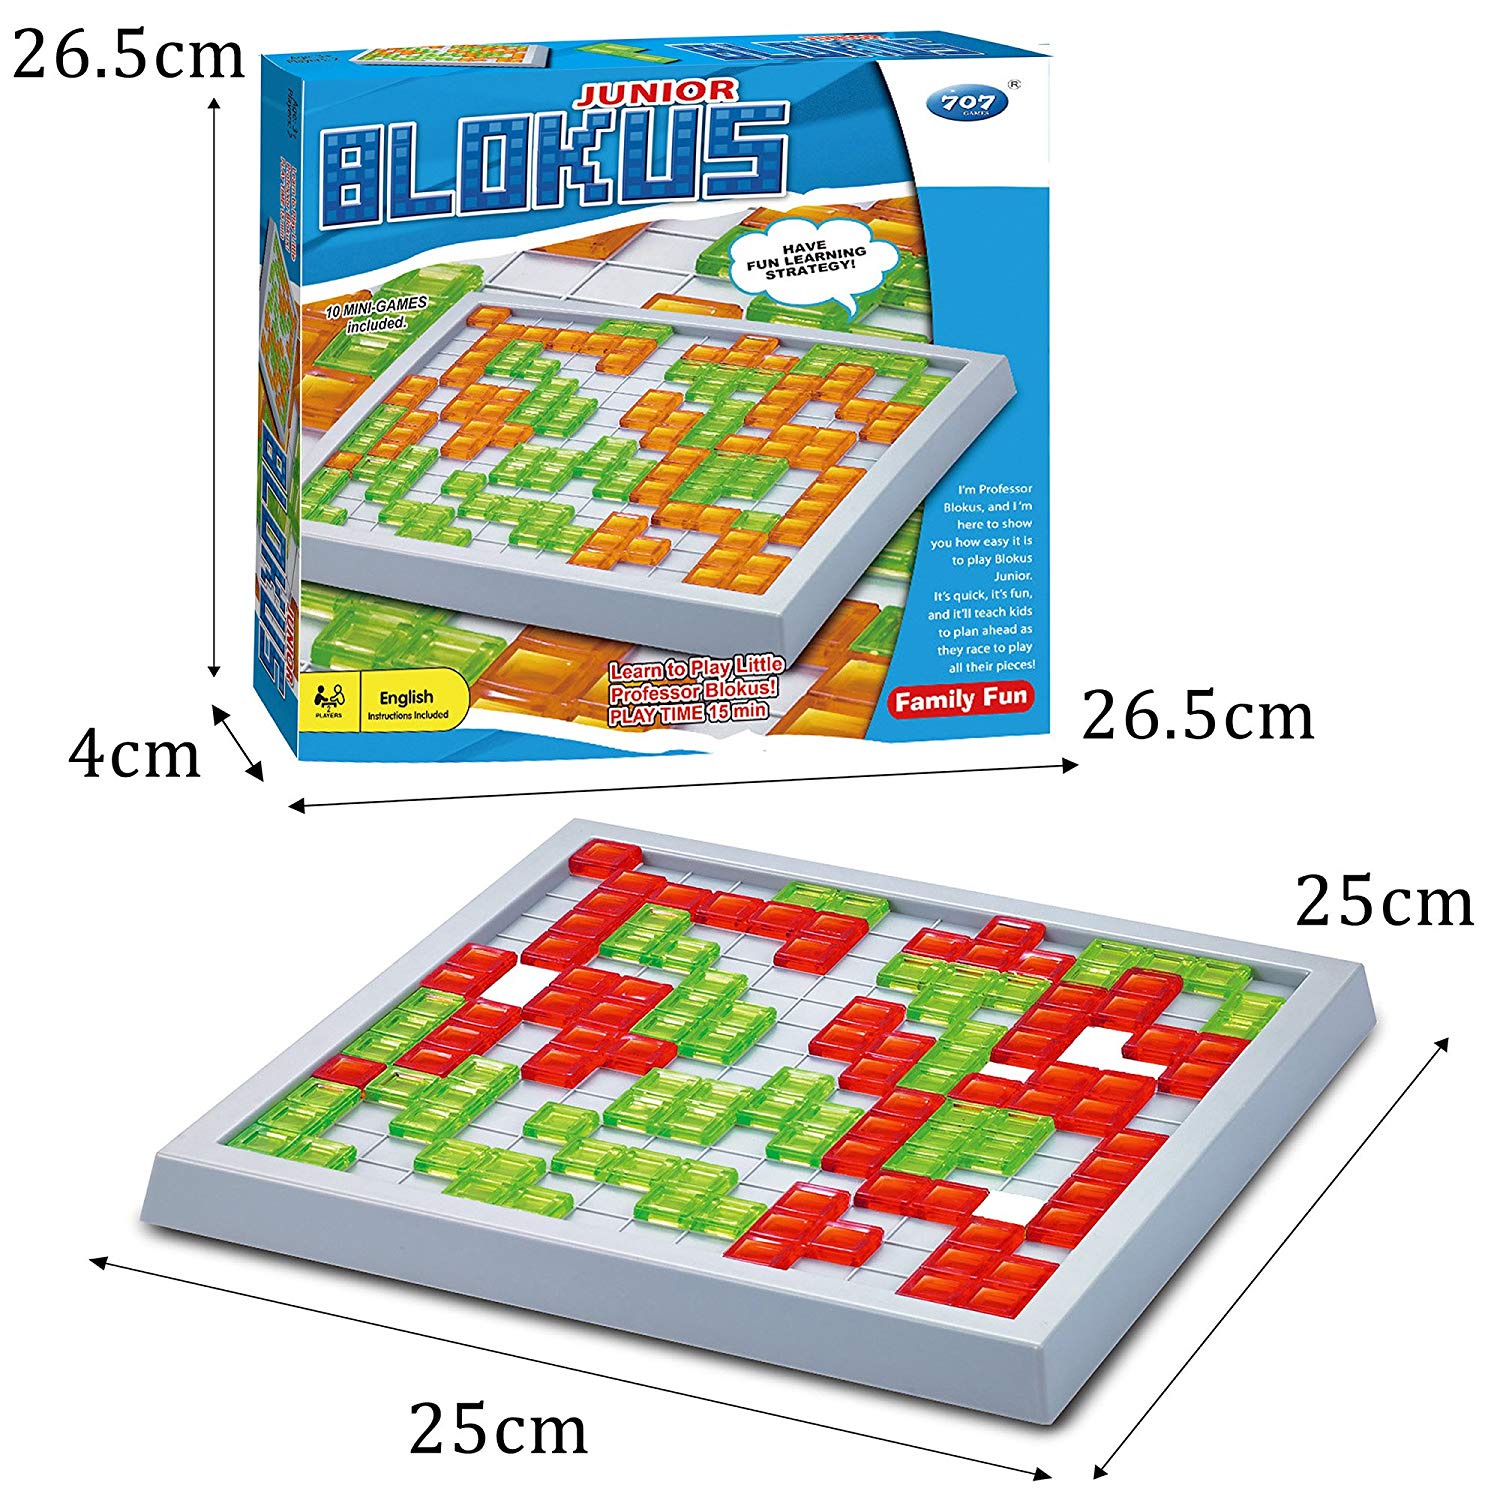 фото Настольная игра BeeZee Toys Стратегическая логическая настольная игра головоломка тетрис, Блокус Джуниор , 48 элементов, 2 игрока Blokus Duo зеленый, оранжевый